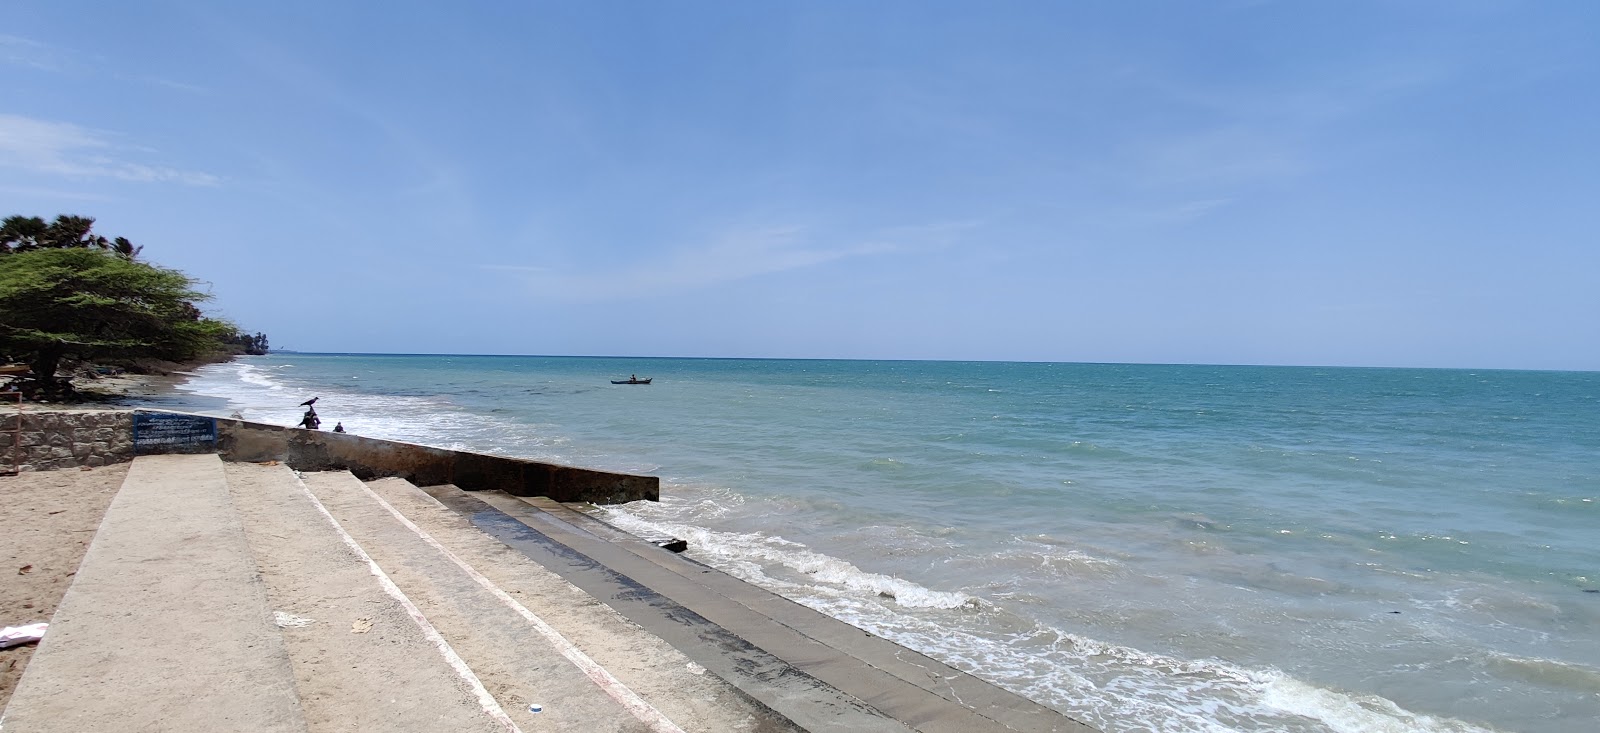 Sethukkarai Beach'in fotoğrafı kısmen temiz temizlik seviyesi ile